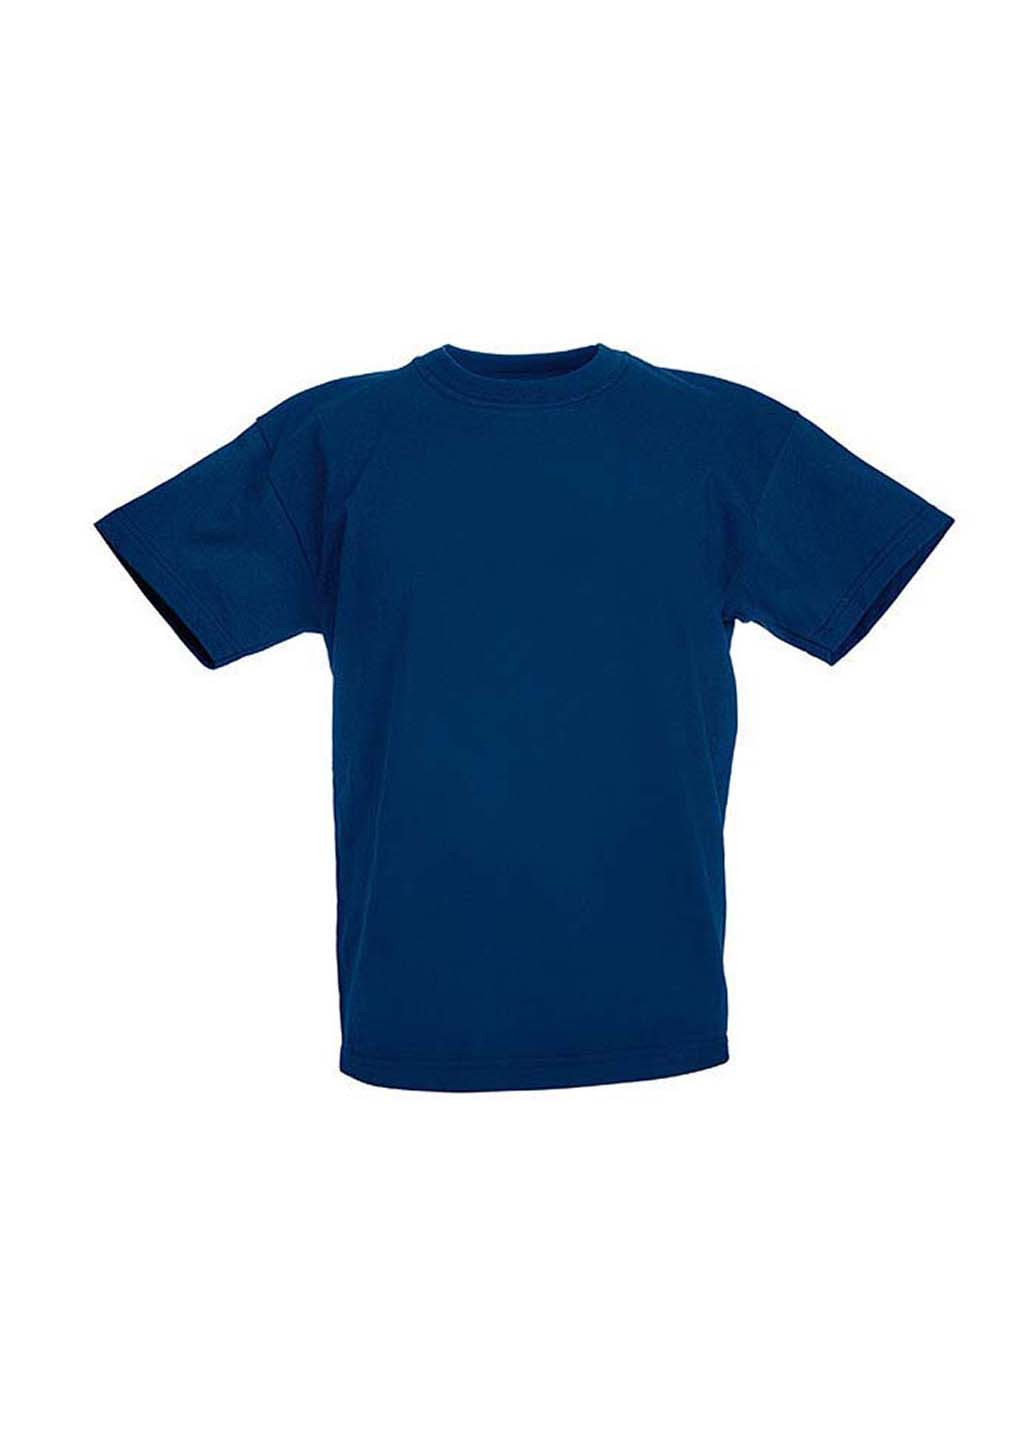 Темно-синяя демисезонная футболка Fruit of the Loom D061033032164